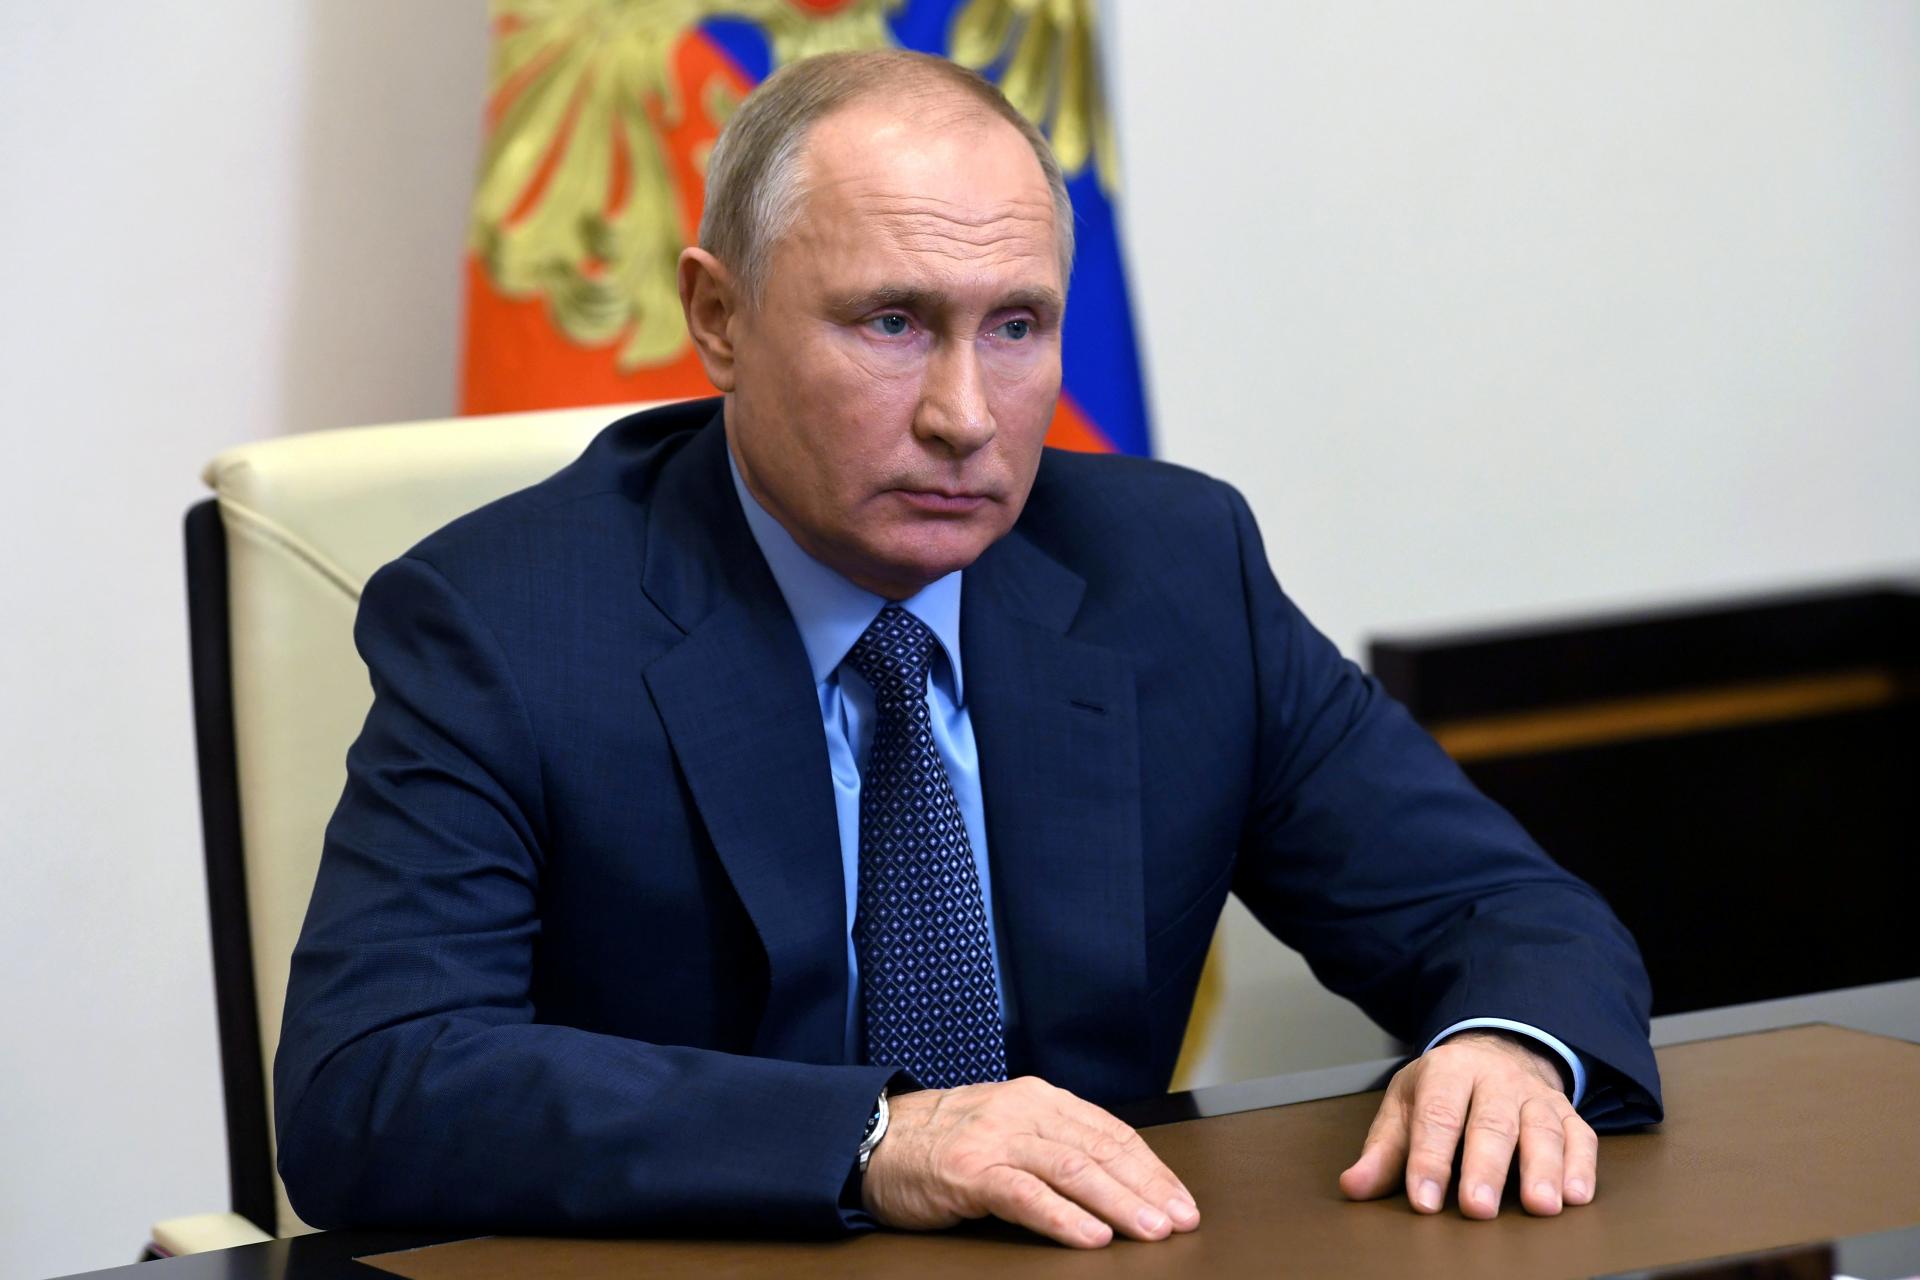 Putin ha ricevuto la prima dose di vaccino anti-covid